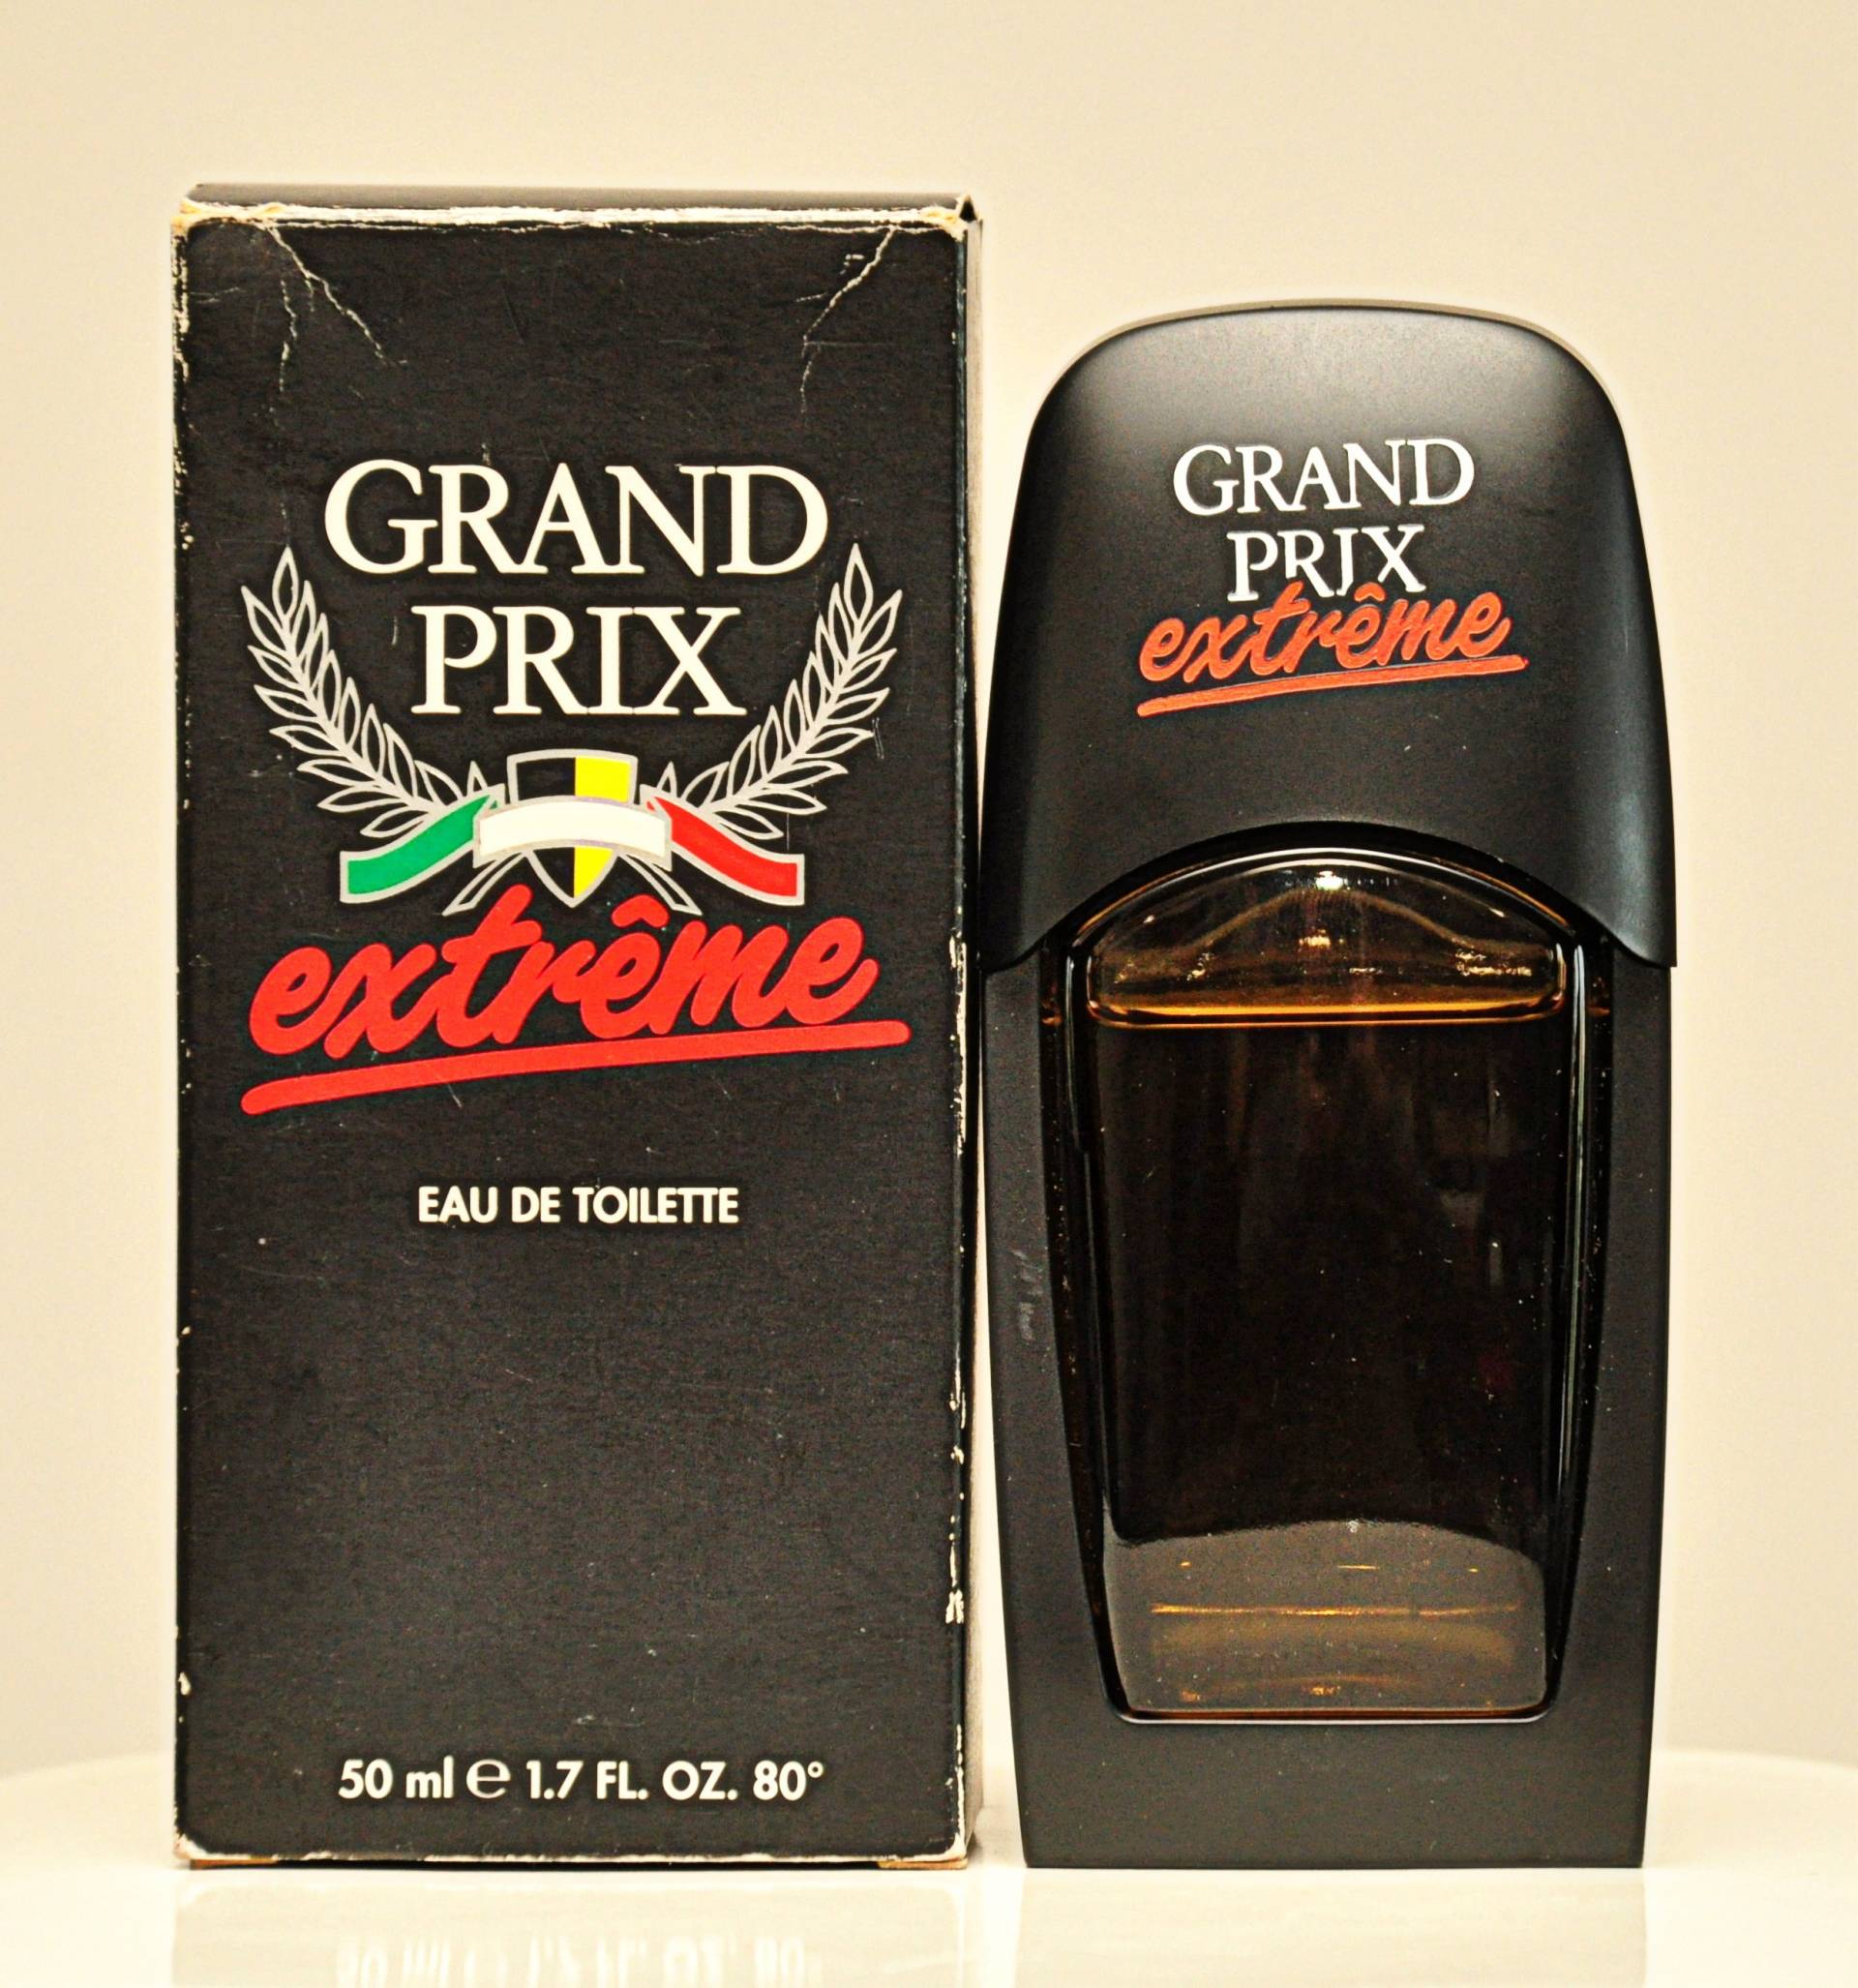 Deborah Grand Prix Extreme Eau De Toilette Edt 50Ml Splash Non Spray Perfume Man Rare Vintage 1994 von YourVintagePerfume